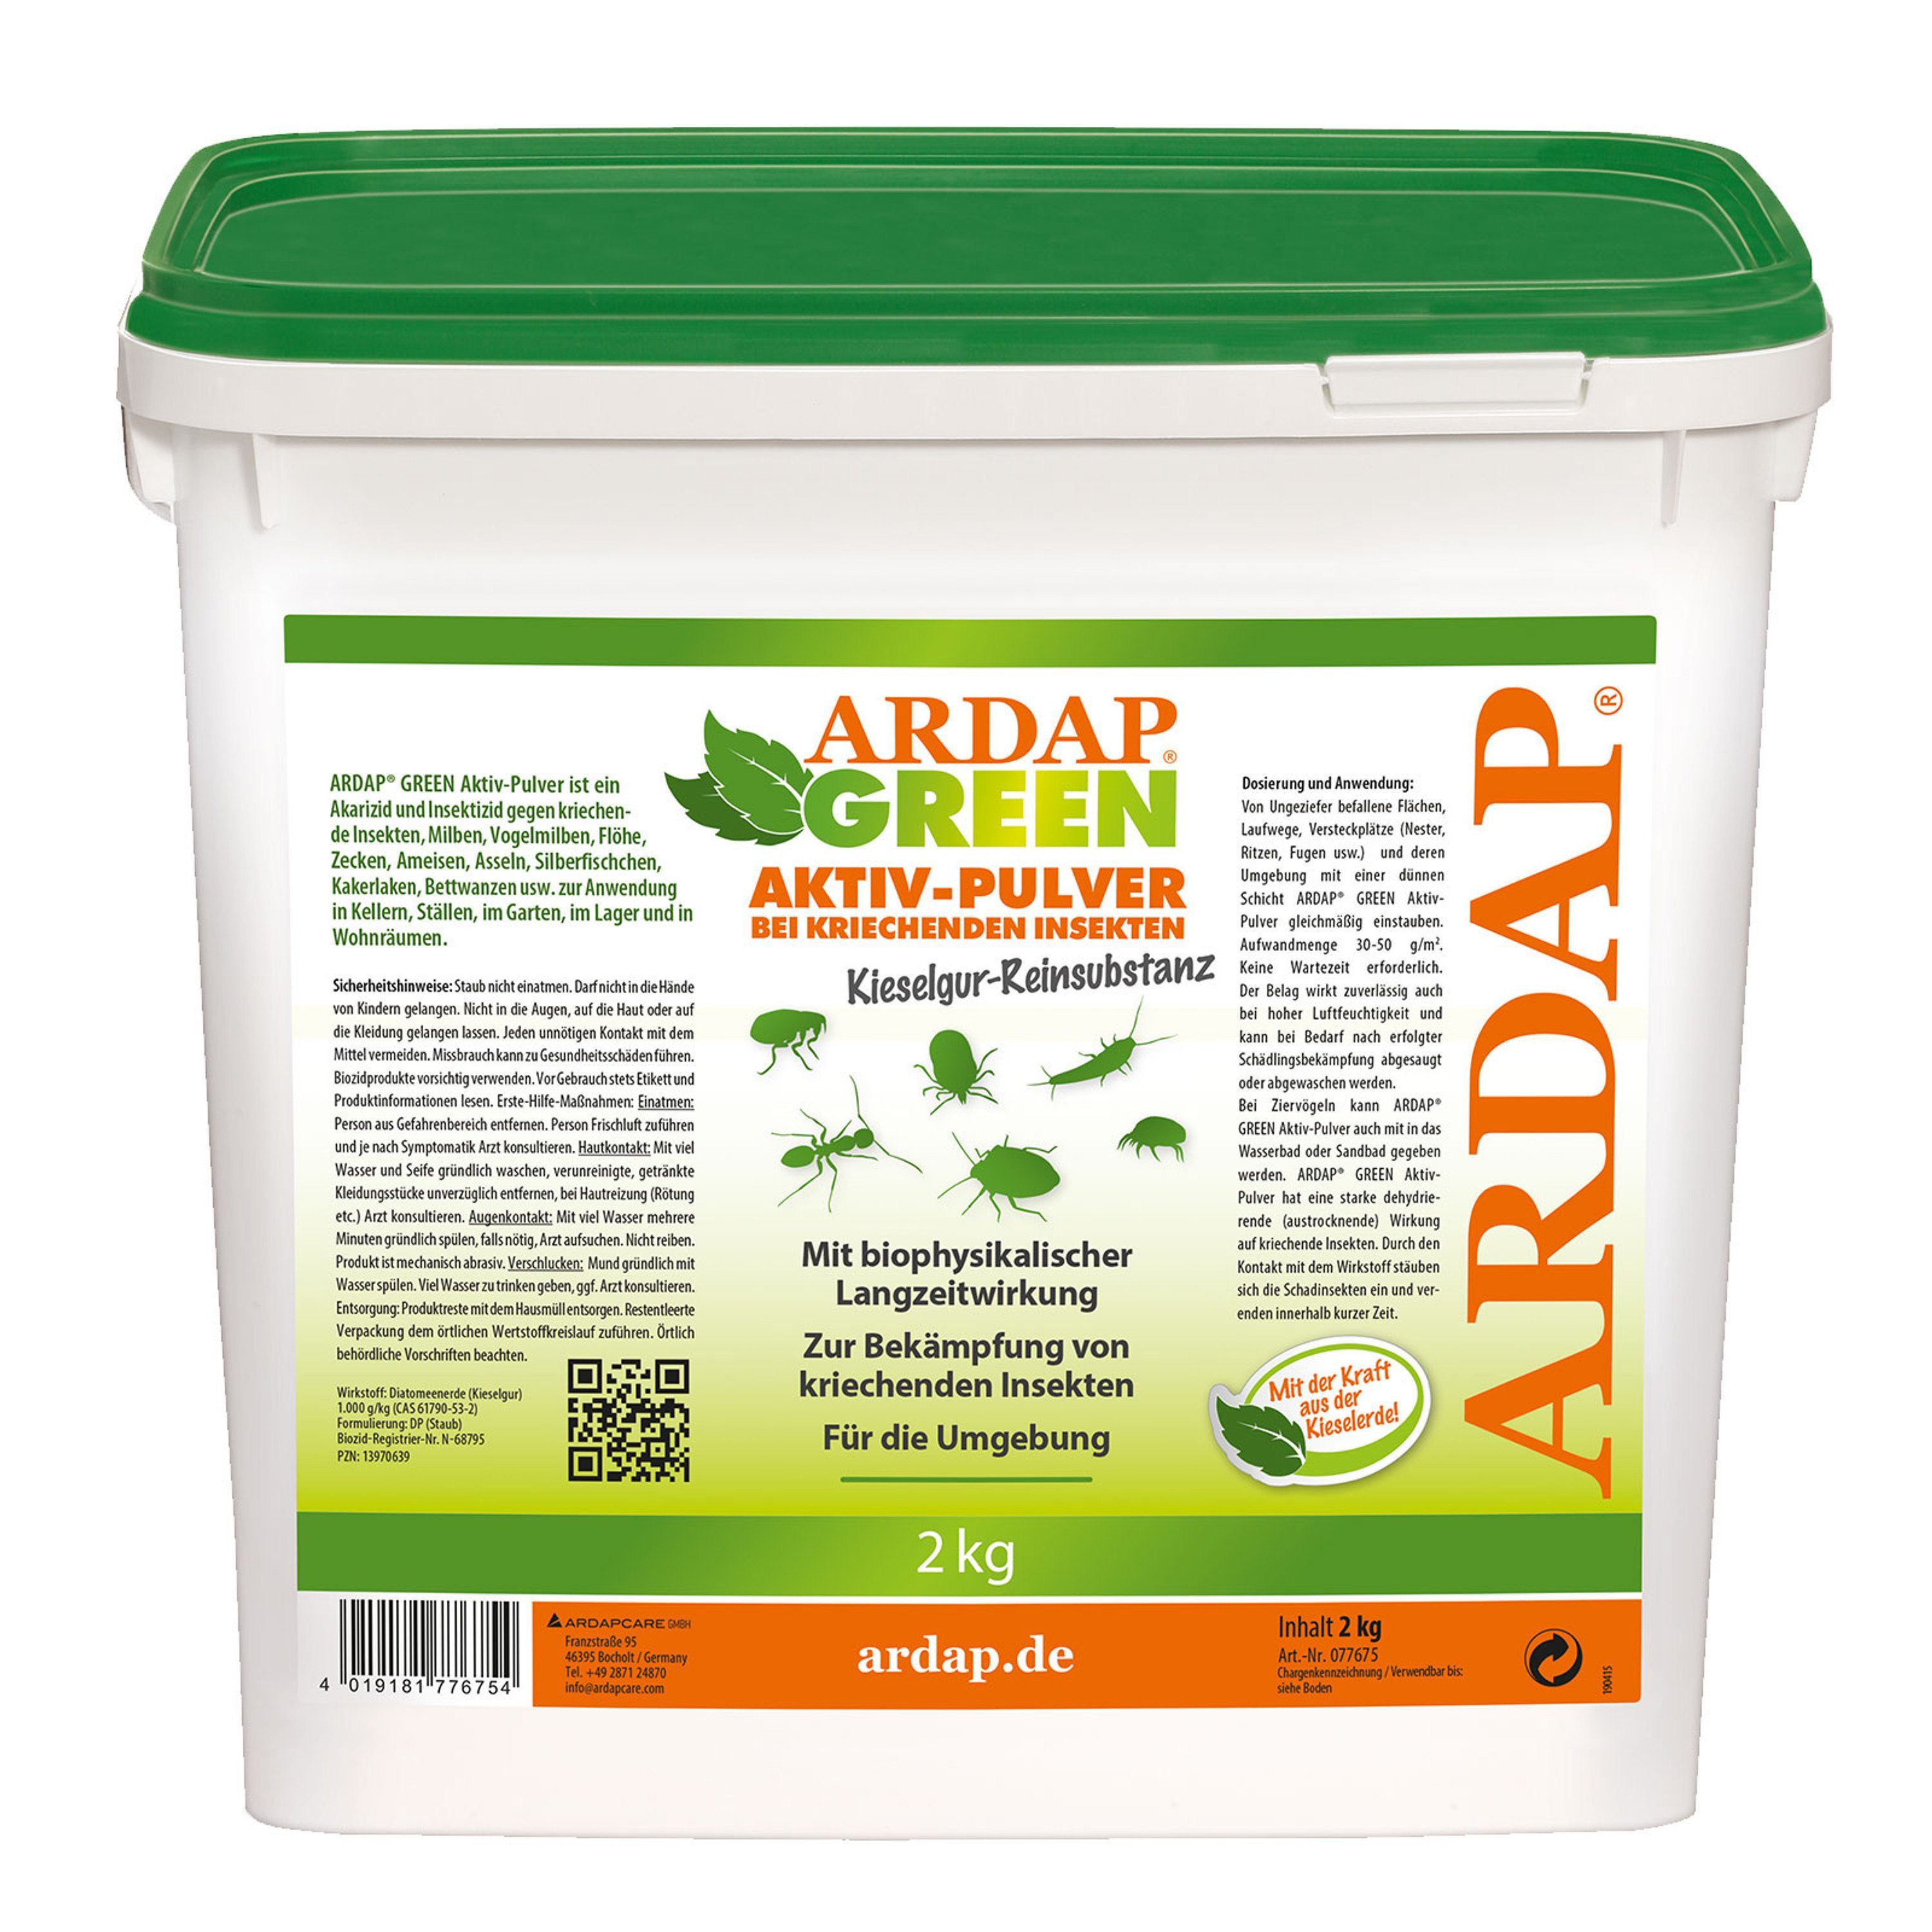 Ardap Insektenspray Ardap Green Aktiv Pulver / 100% reine Kieselgur gegen Vogelmilben und kriechende Insekten / 1 x 10 Liter Eimer 2 Kg